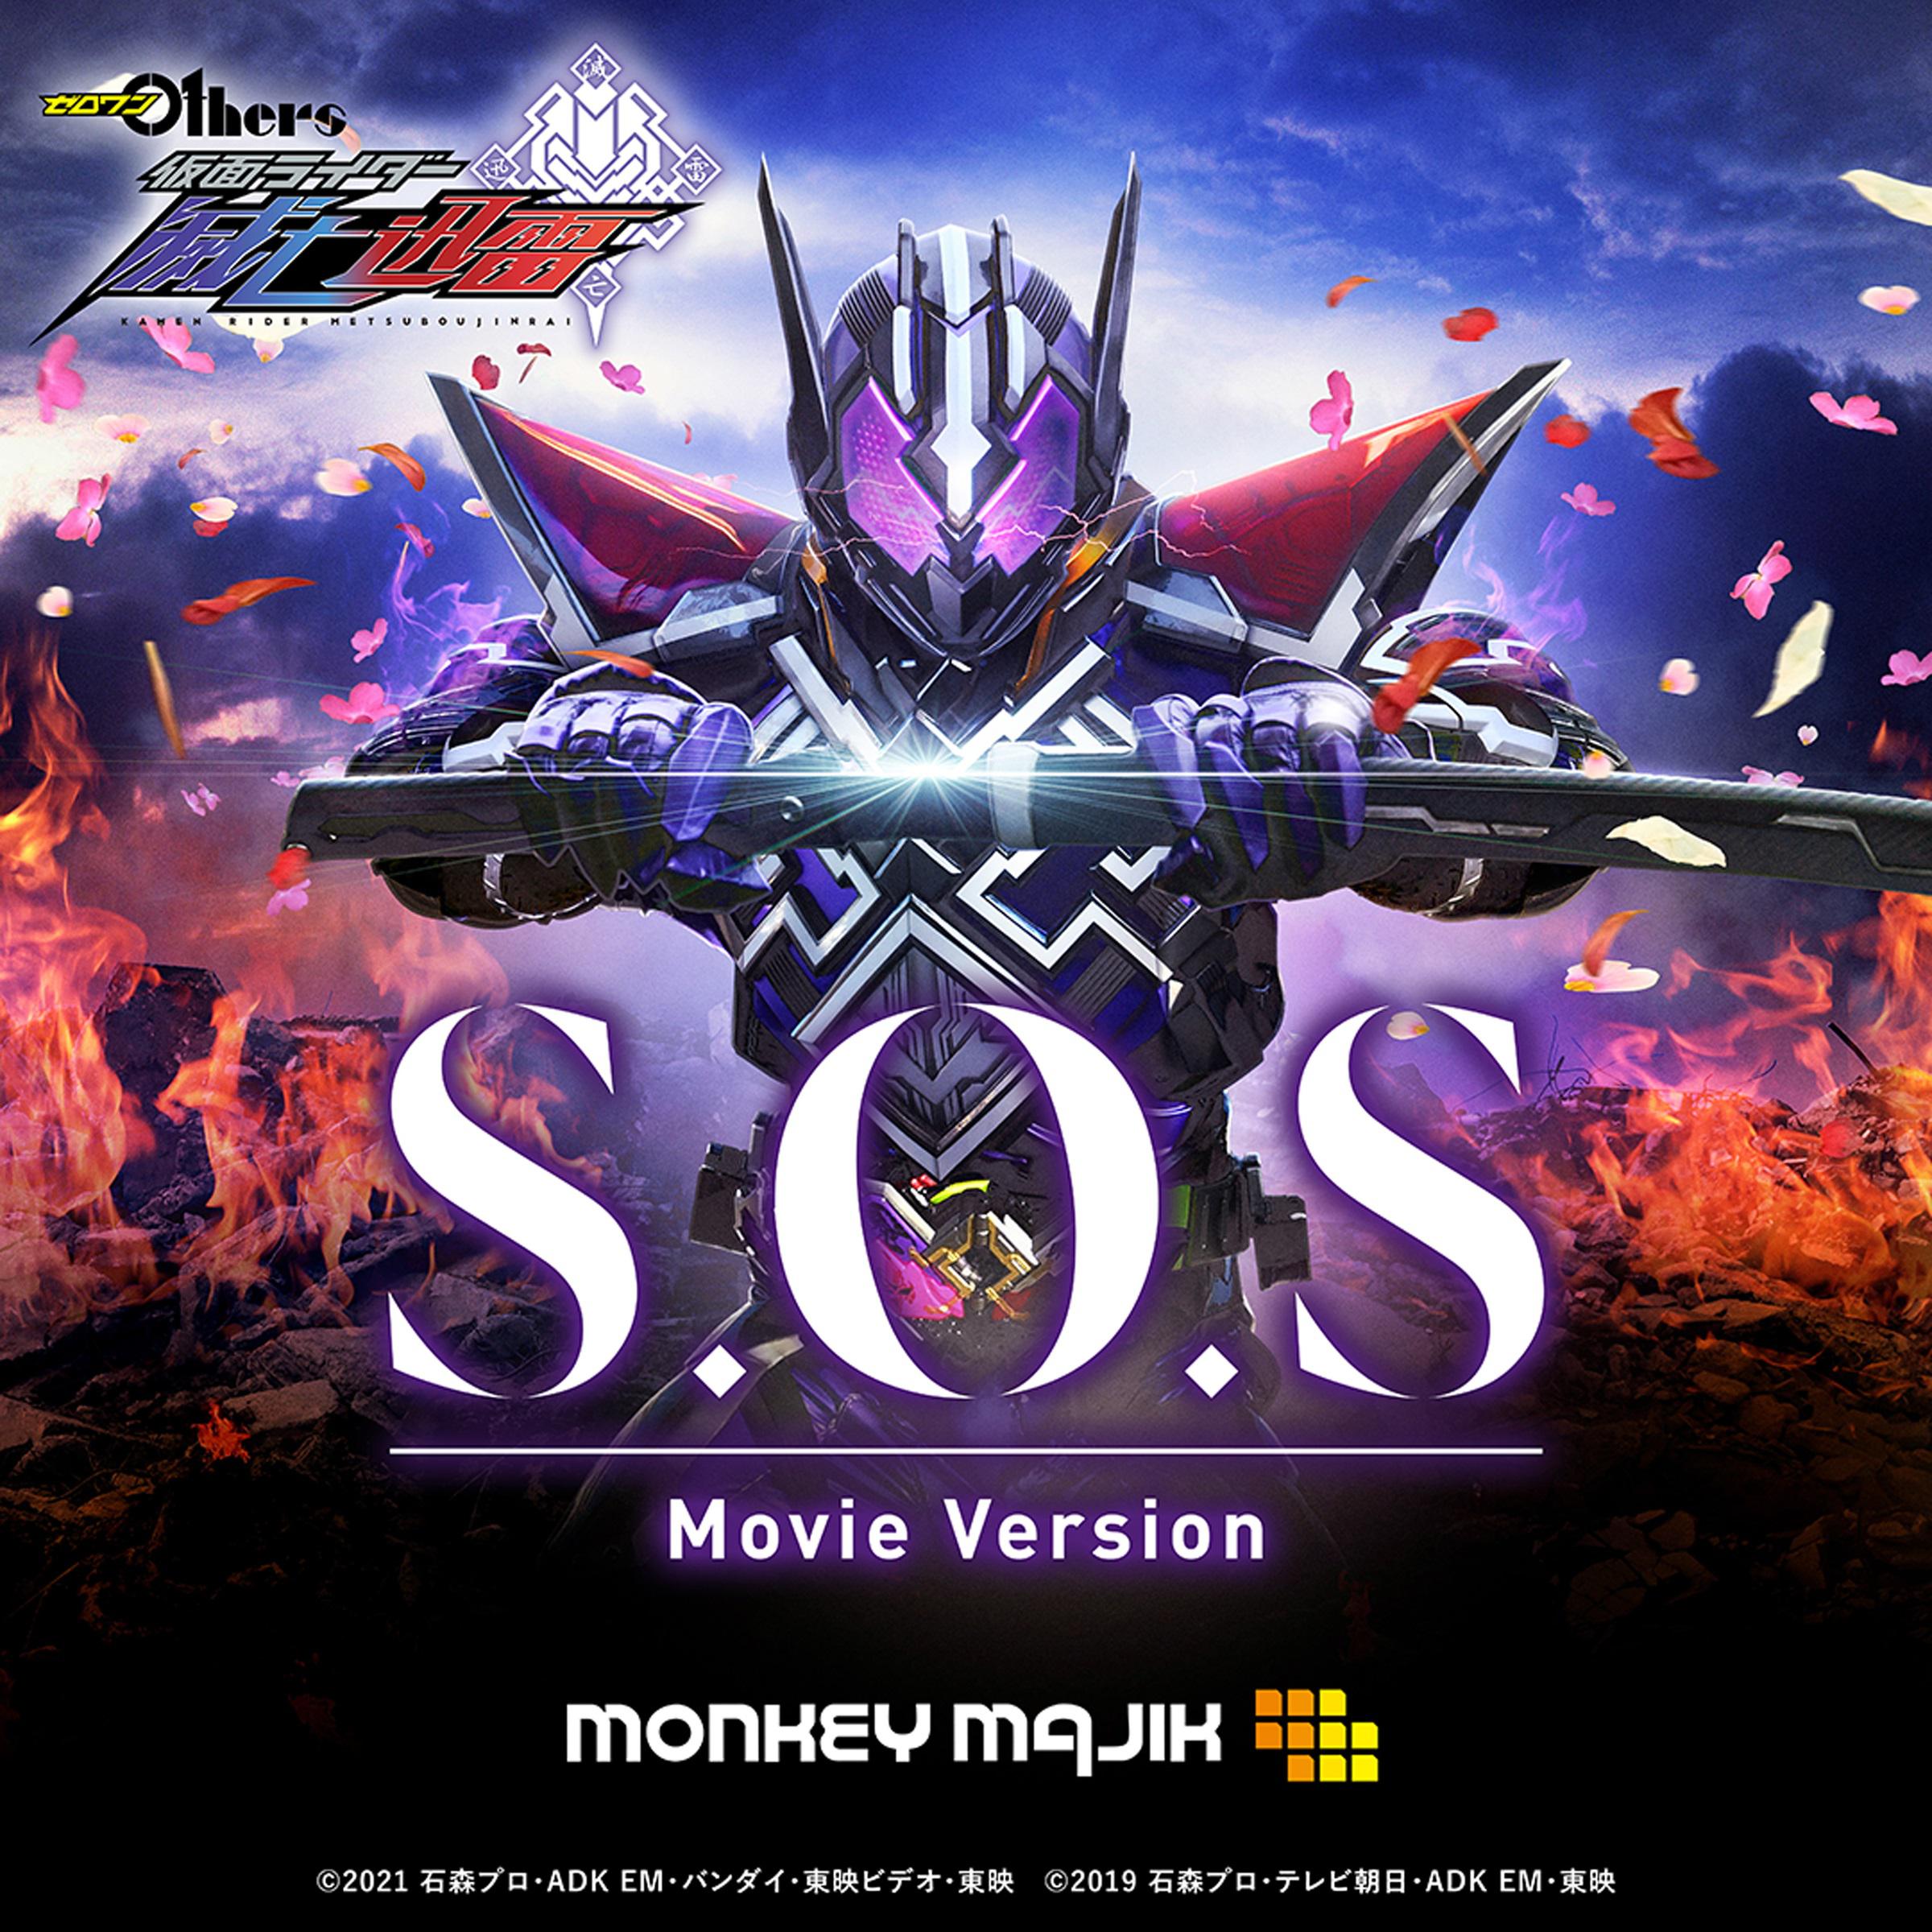 MONKEY MAJIK - S.O.S Movie Version